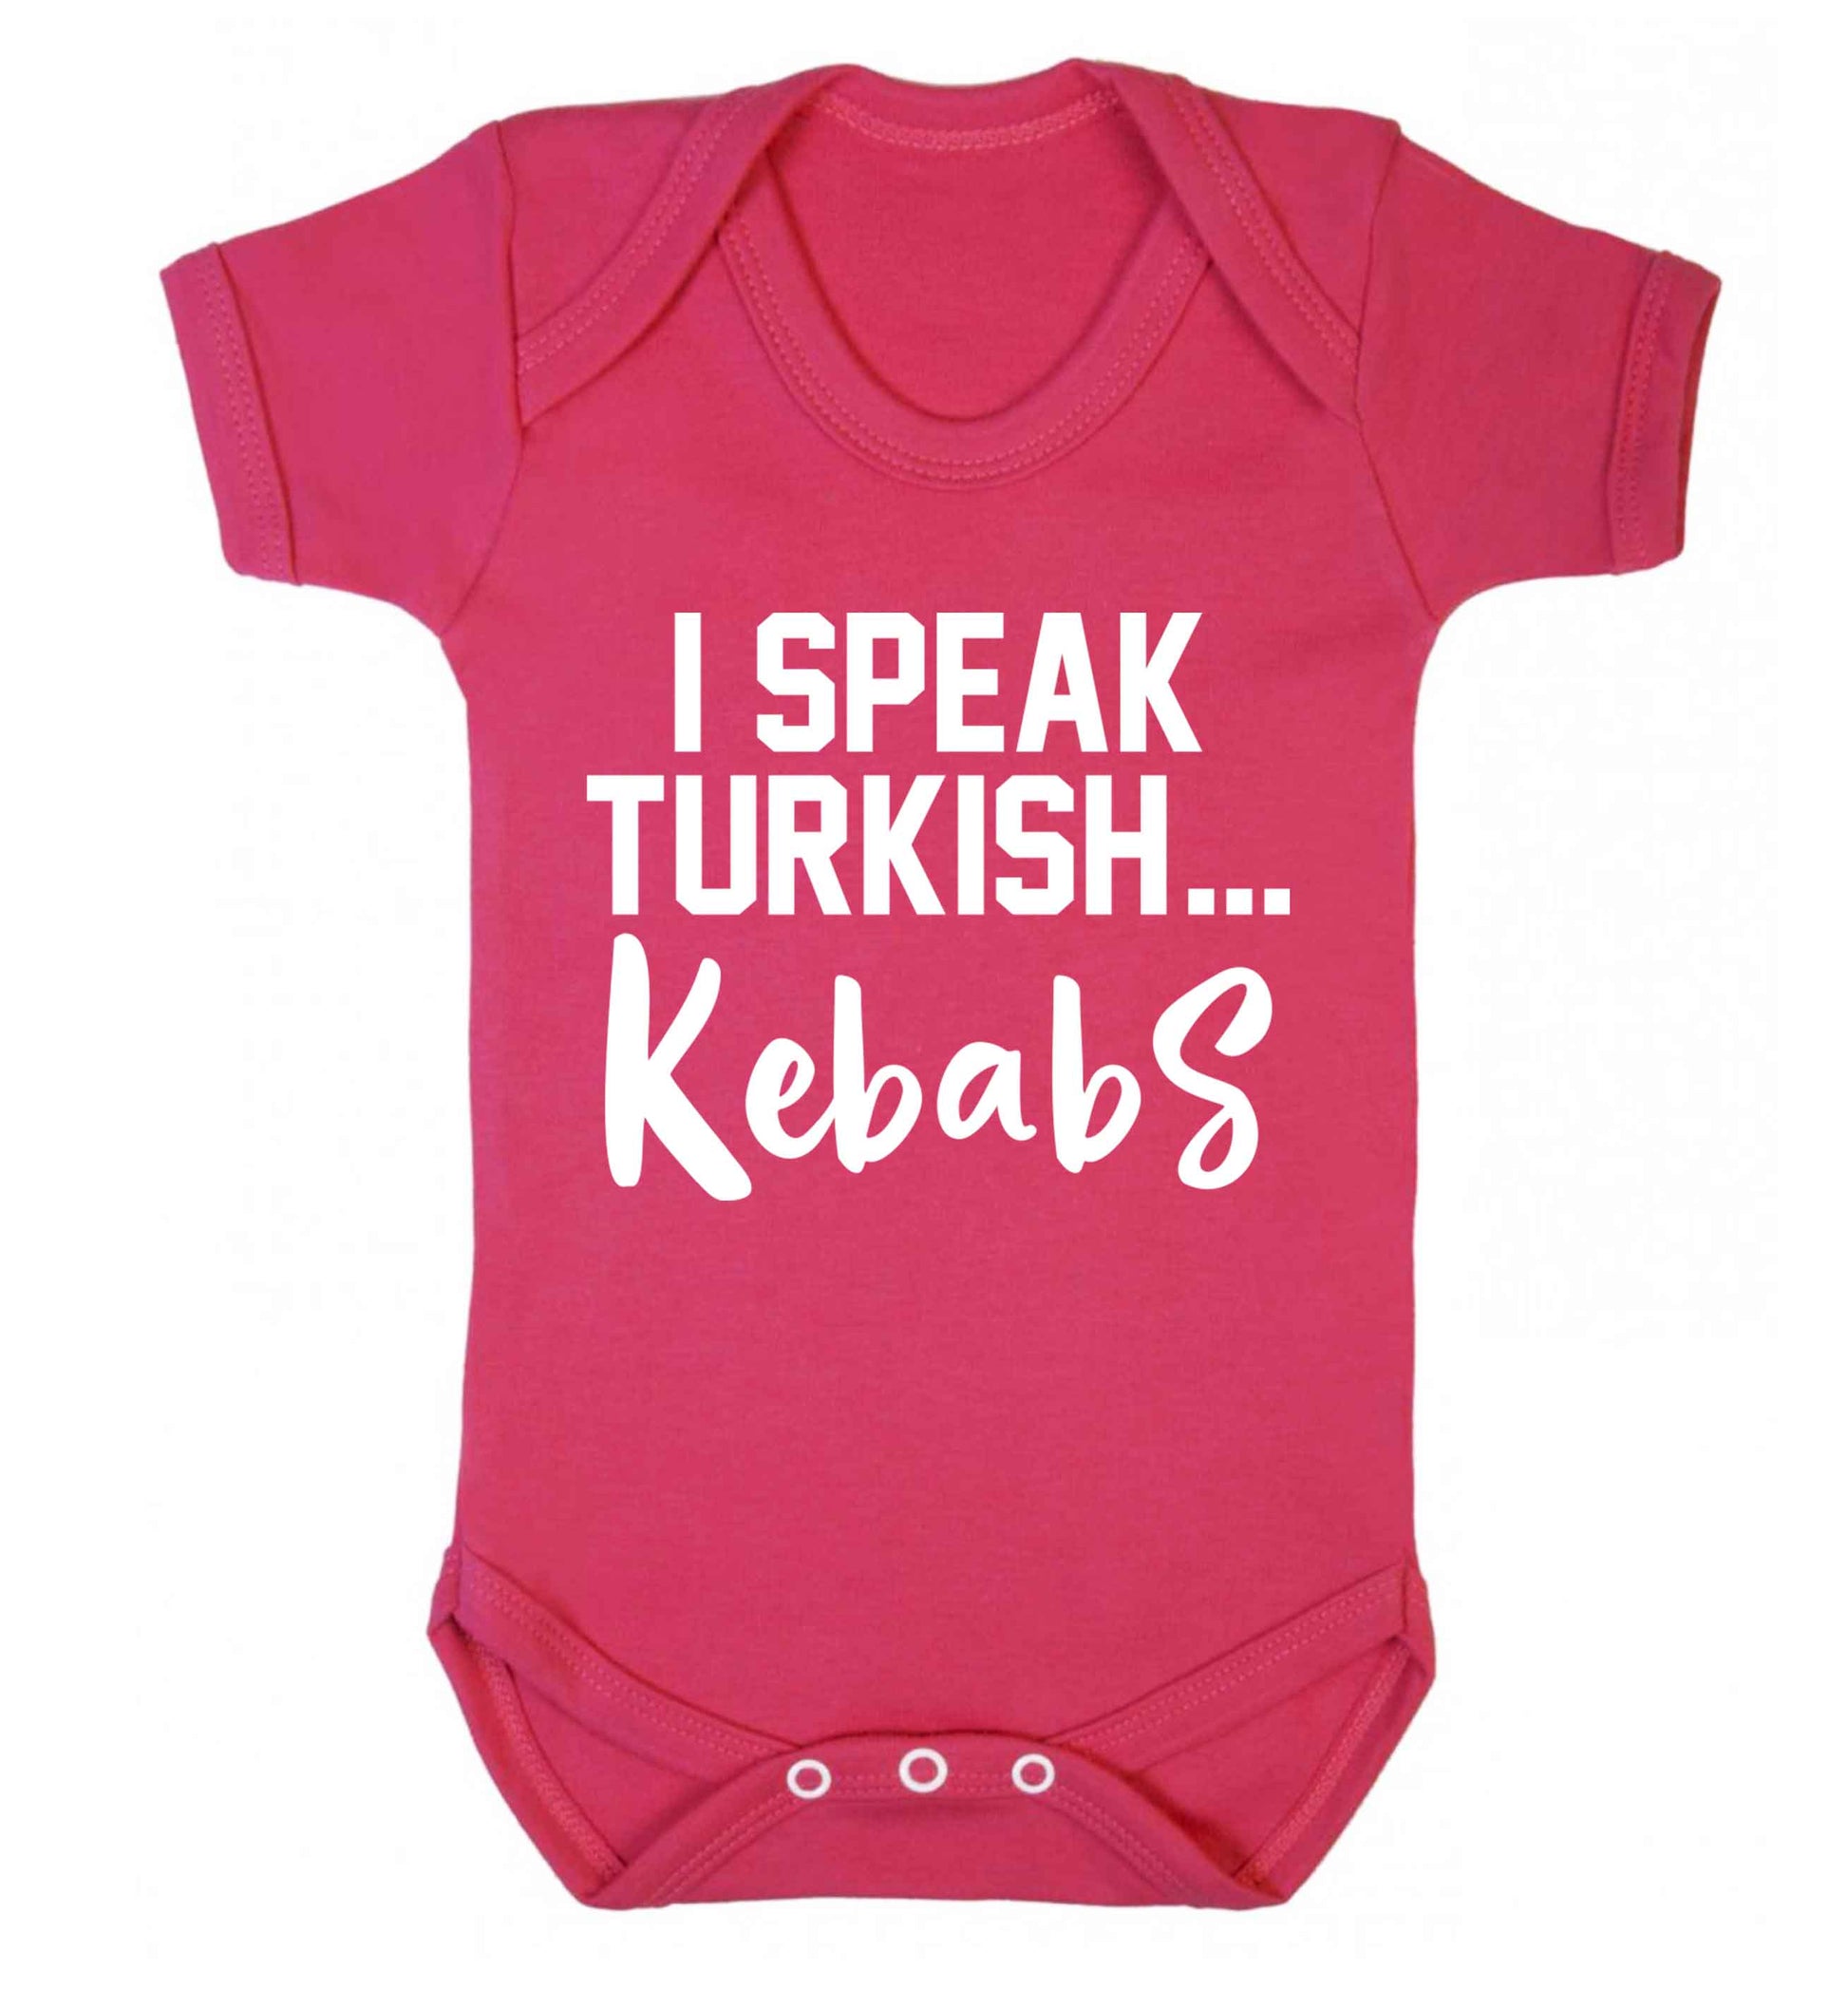 I speak Turkish...kebabs Baby Vest dark pink 18-24 months